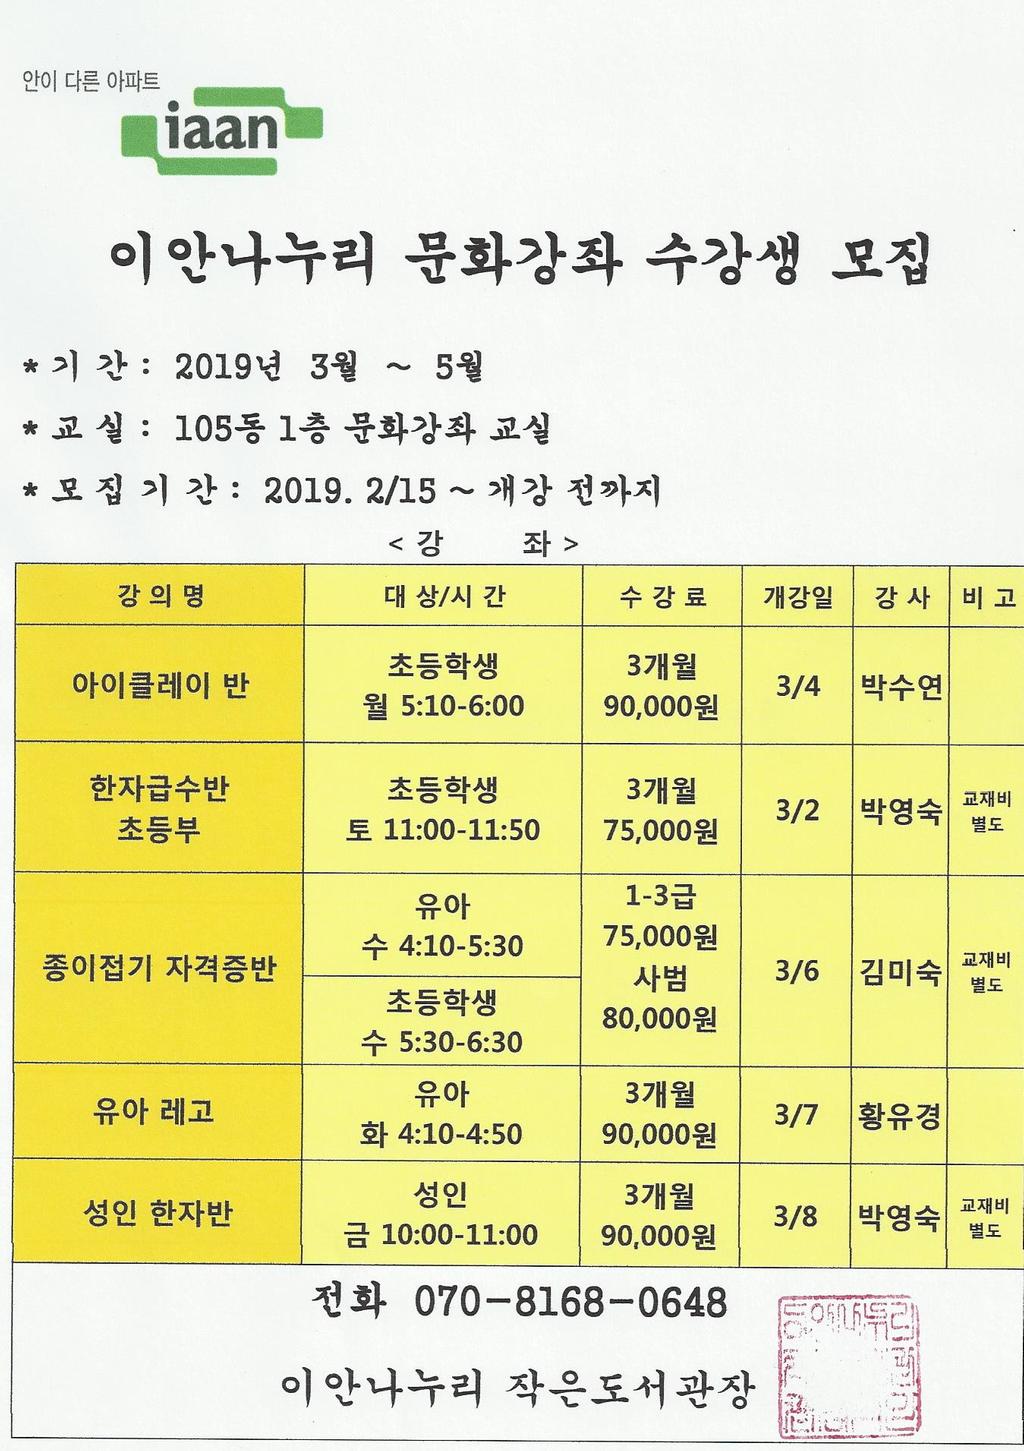 2019-3월 문화강좌 수강생 모집 안내문